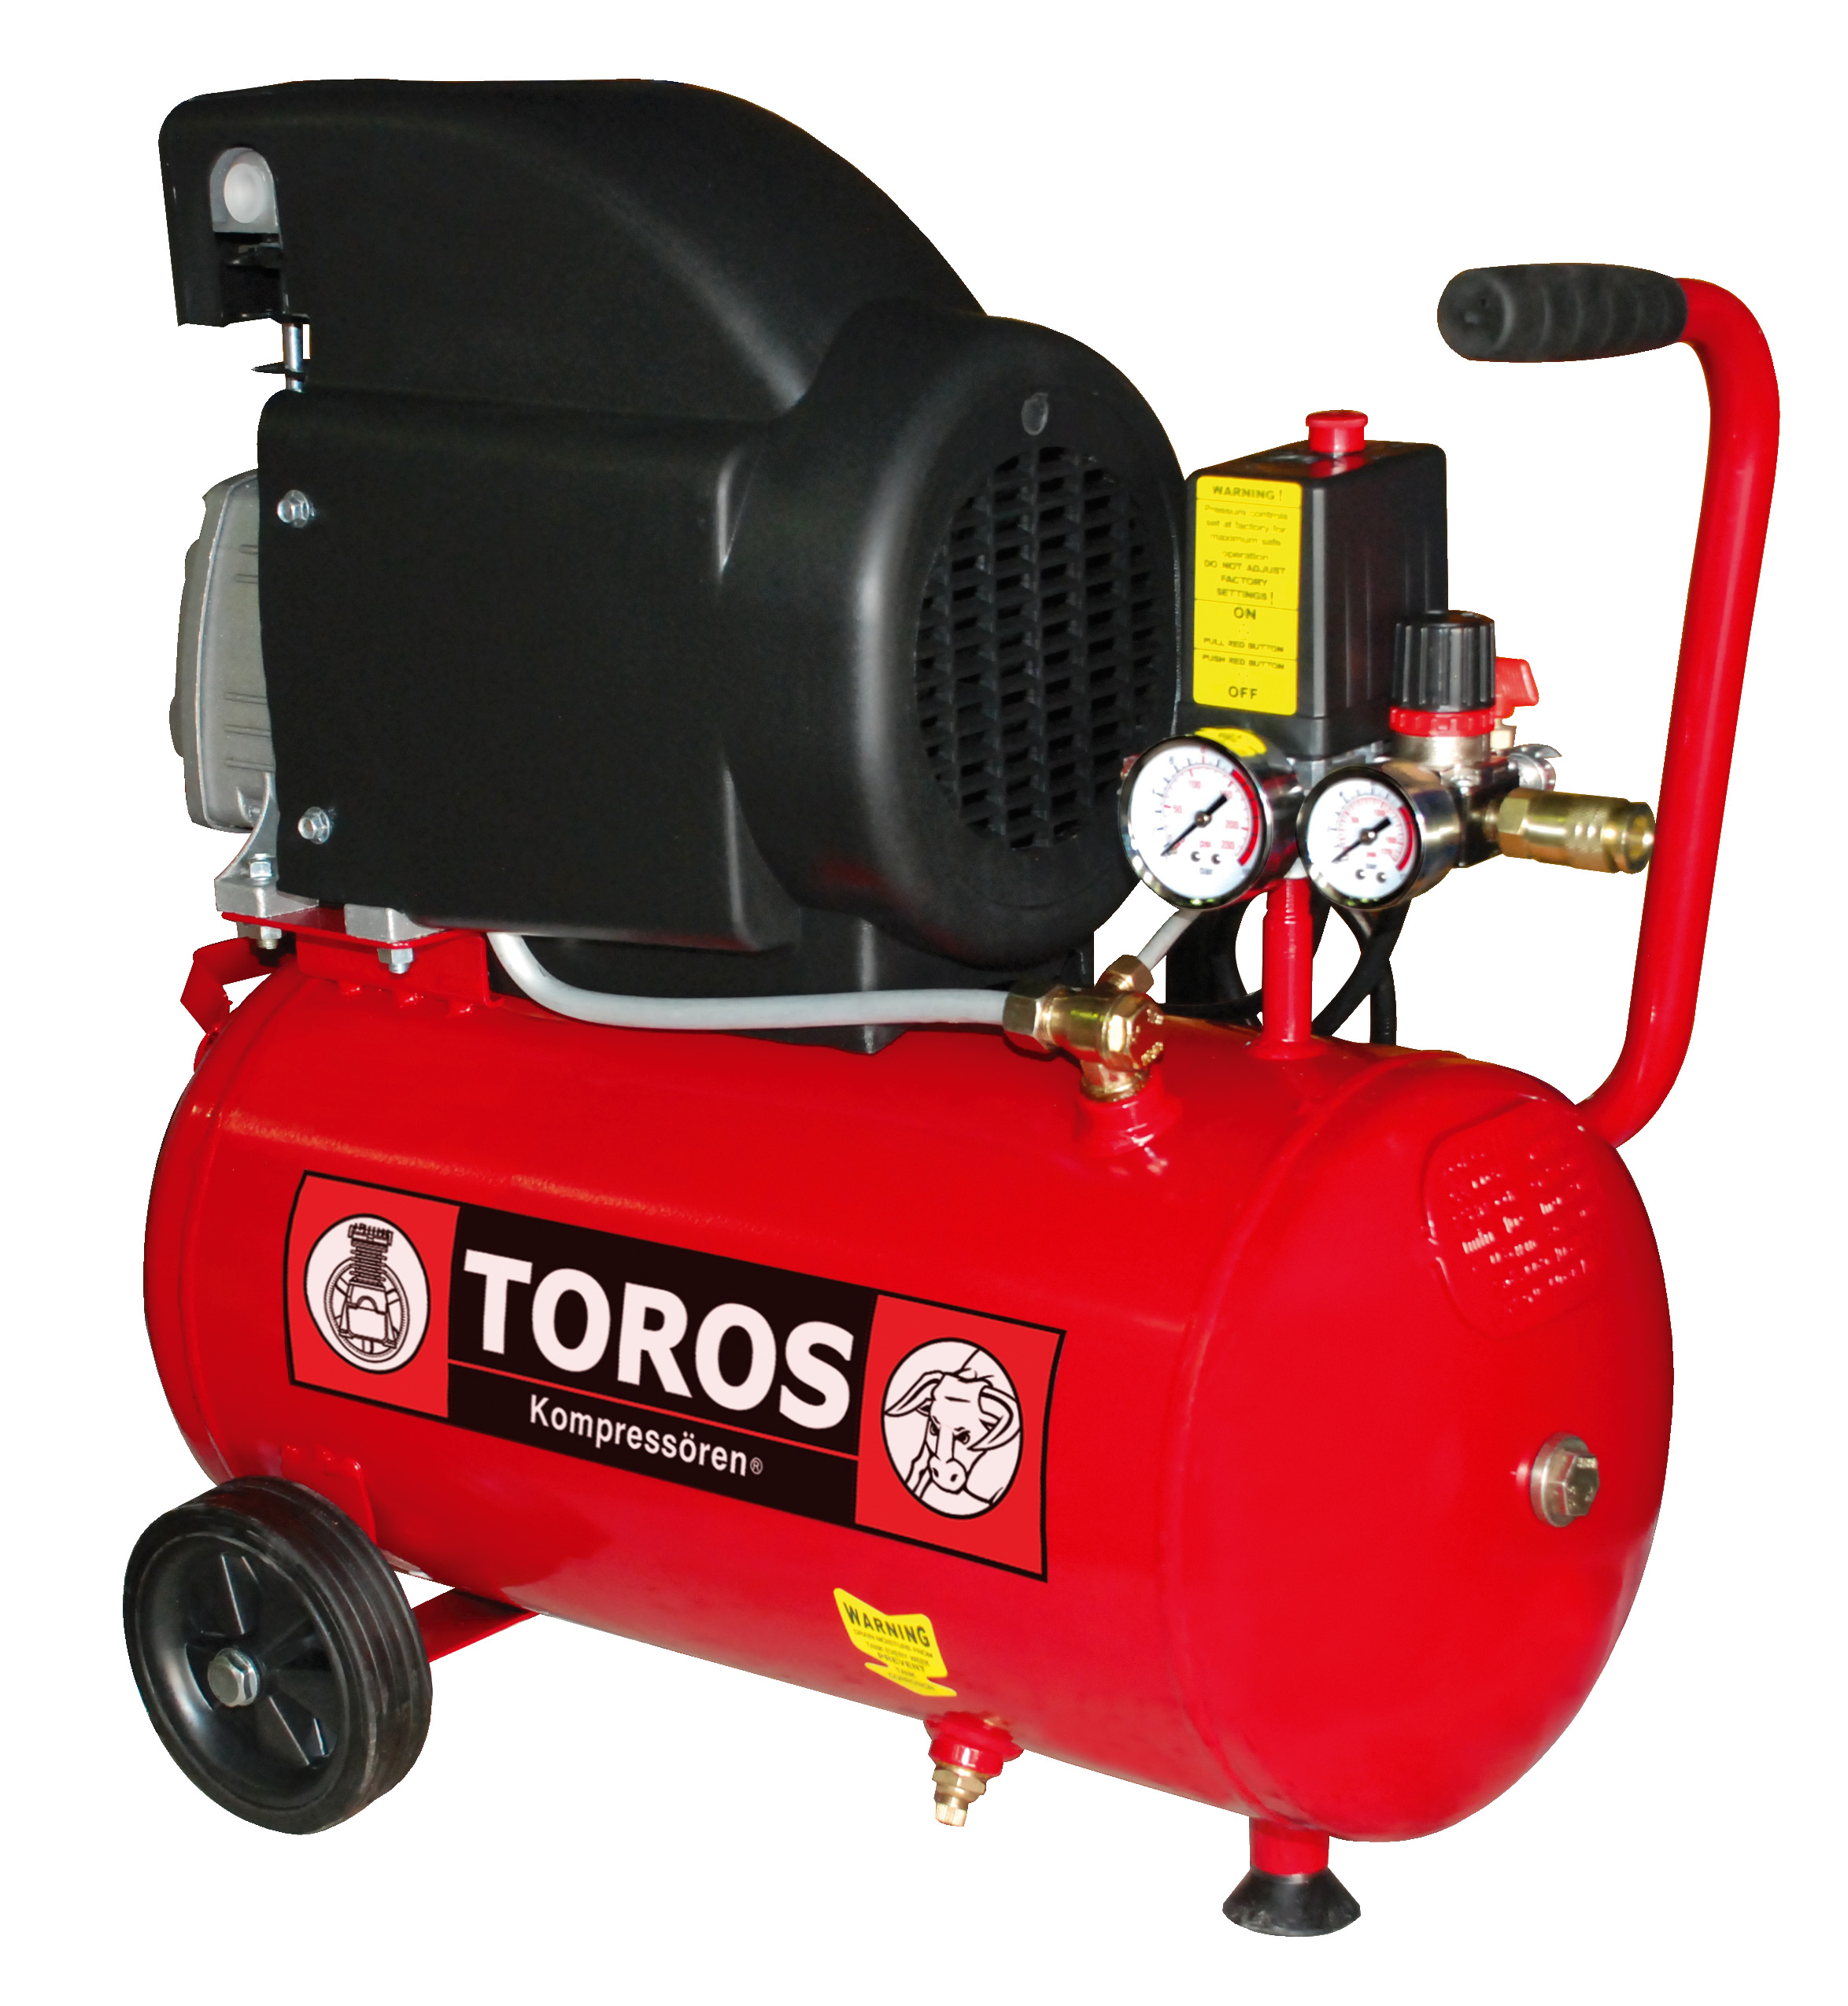 Single Block Oil Air Compressor 24L/2hp Toros